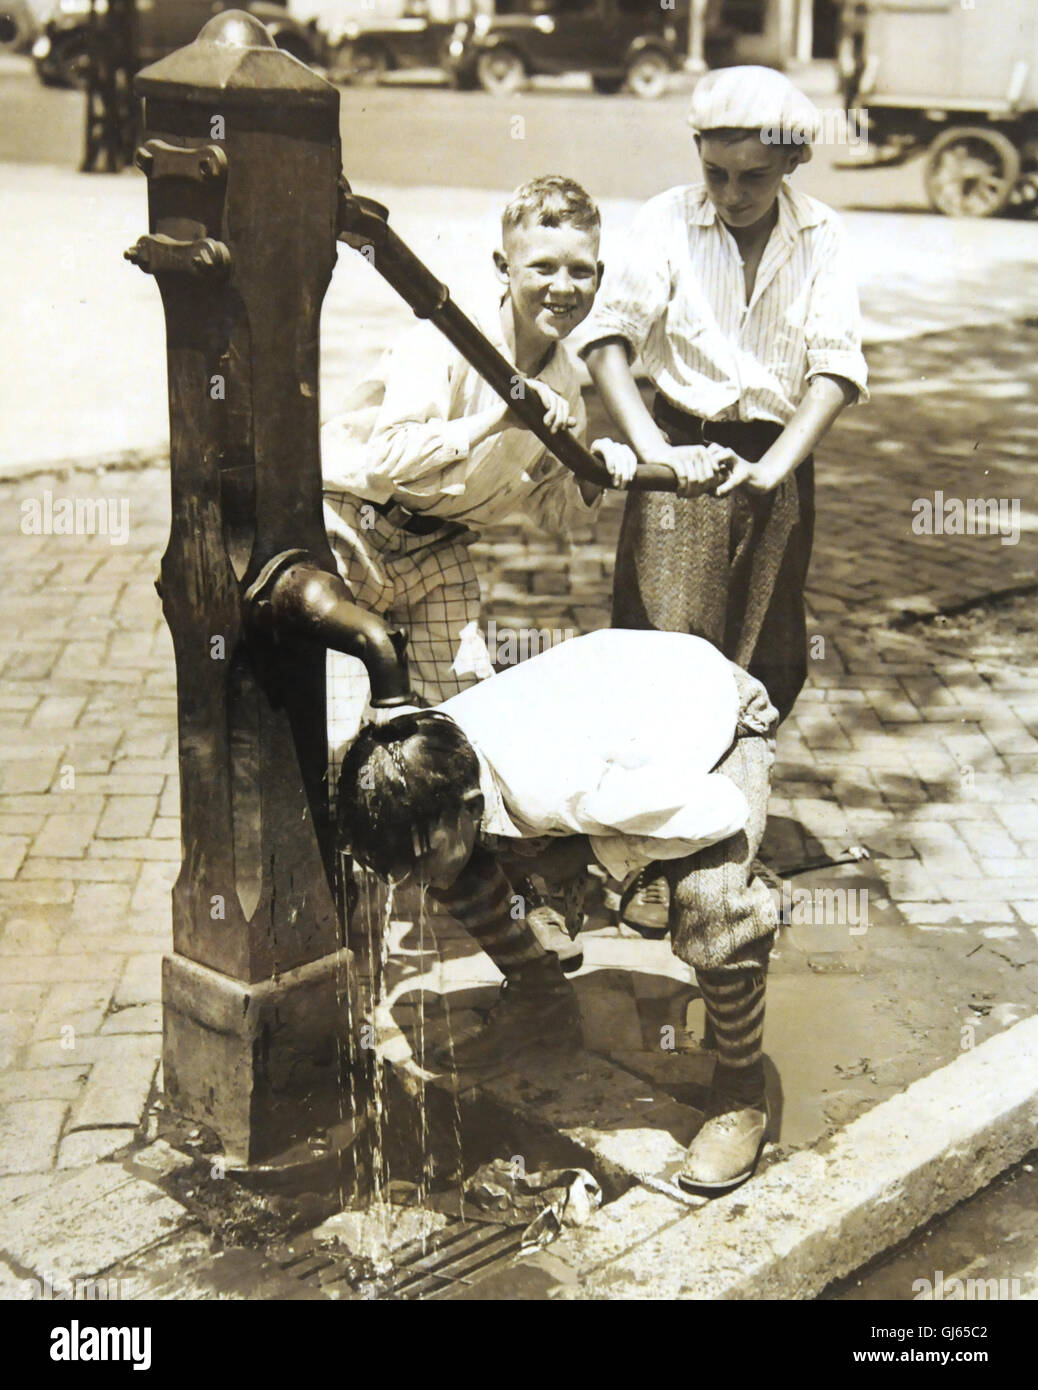 Ragazzi ottenere acqua in una giornata calda da una vecchia pompa disposta su Pennsylvania Avenue non lontano dalla Casa Bianca. Foto Stock